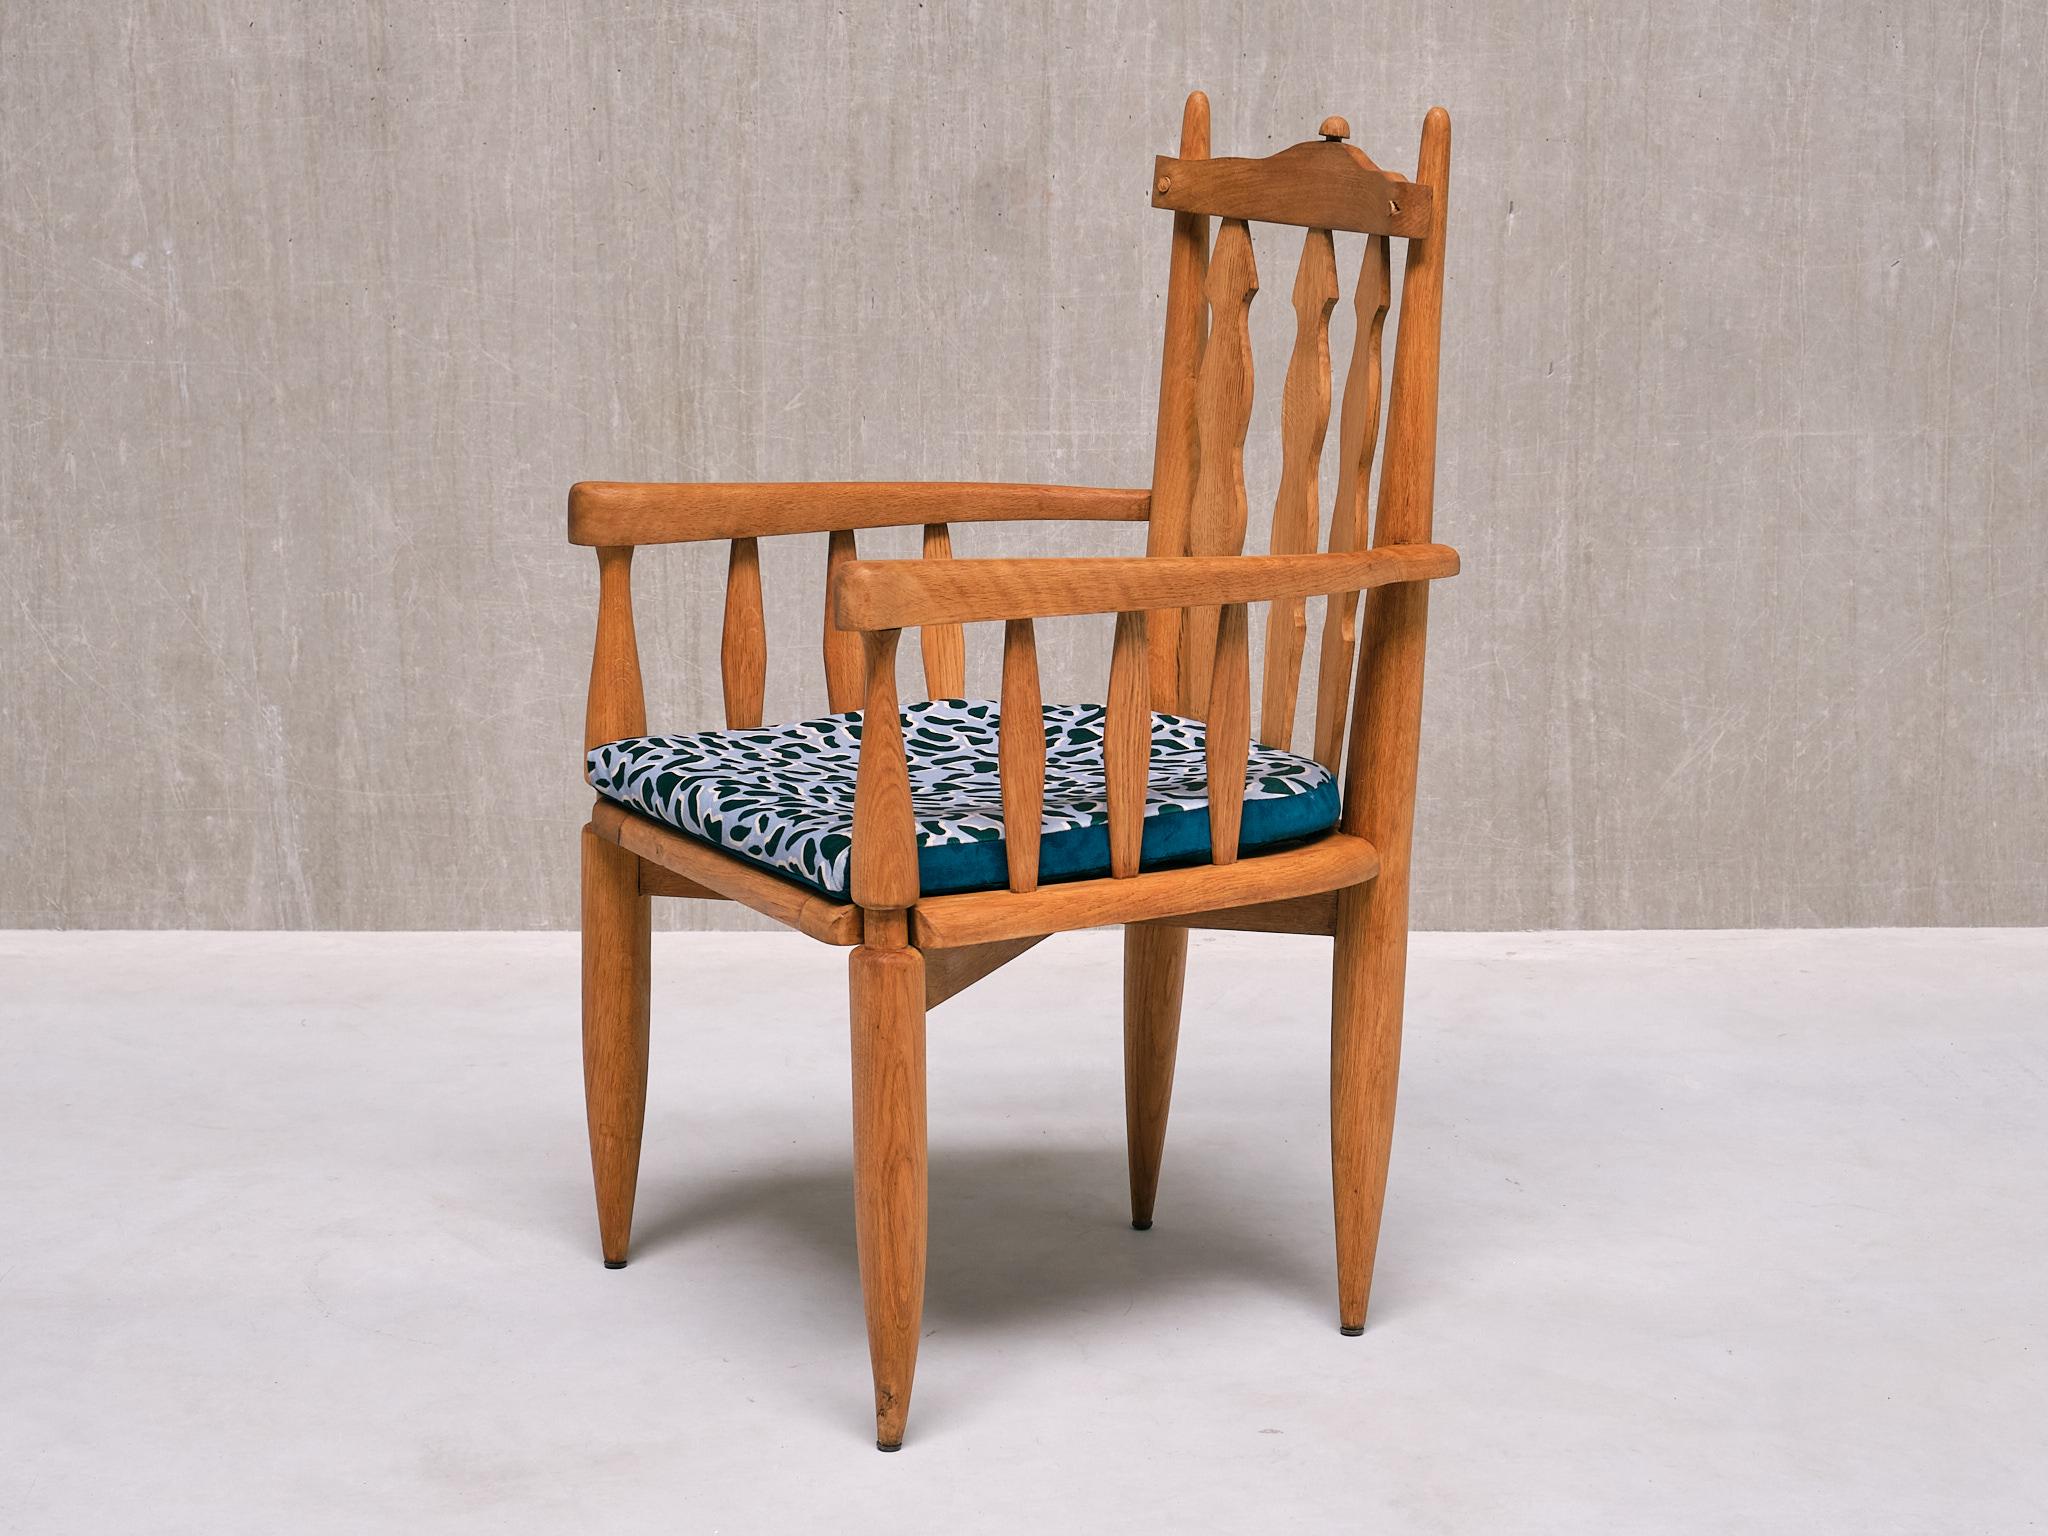 Ce fauteuil sculptural a été conçu par Jacques Chambron et Robert Guillerme dans les années 1950. Il a été produit par leur entreprise Votre Maison dans le nord de la France. Cette chaise se distingue comme l'une des conceptions les plus originales